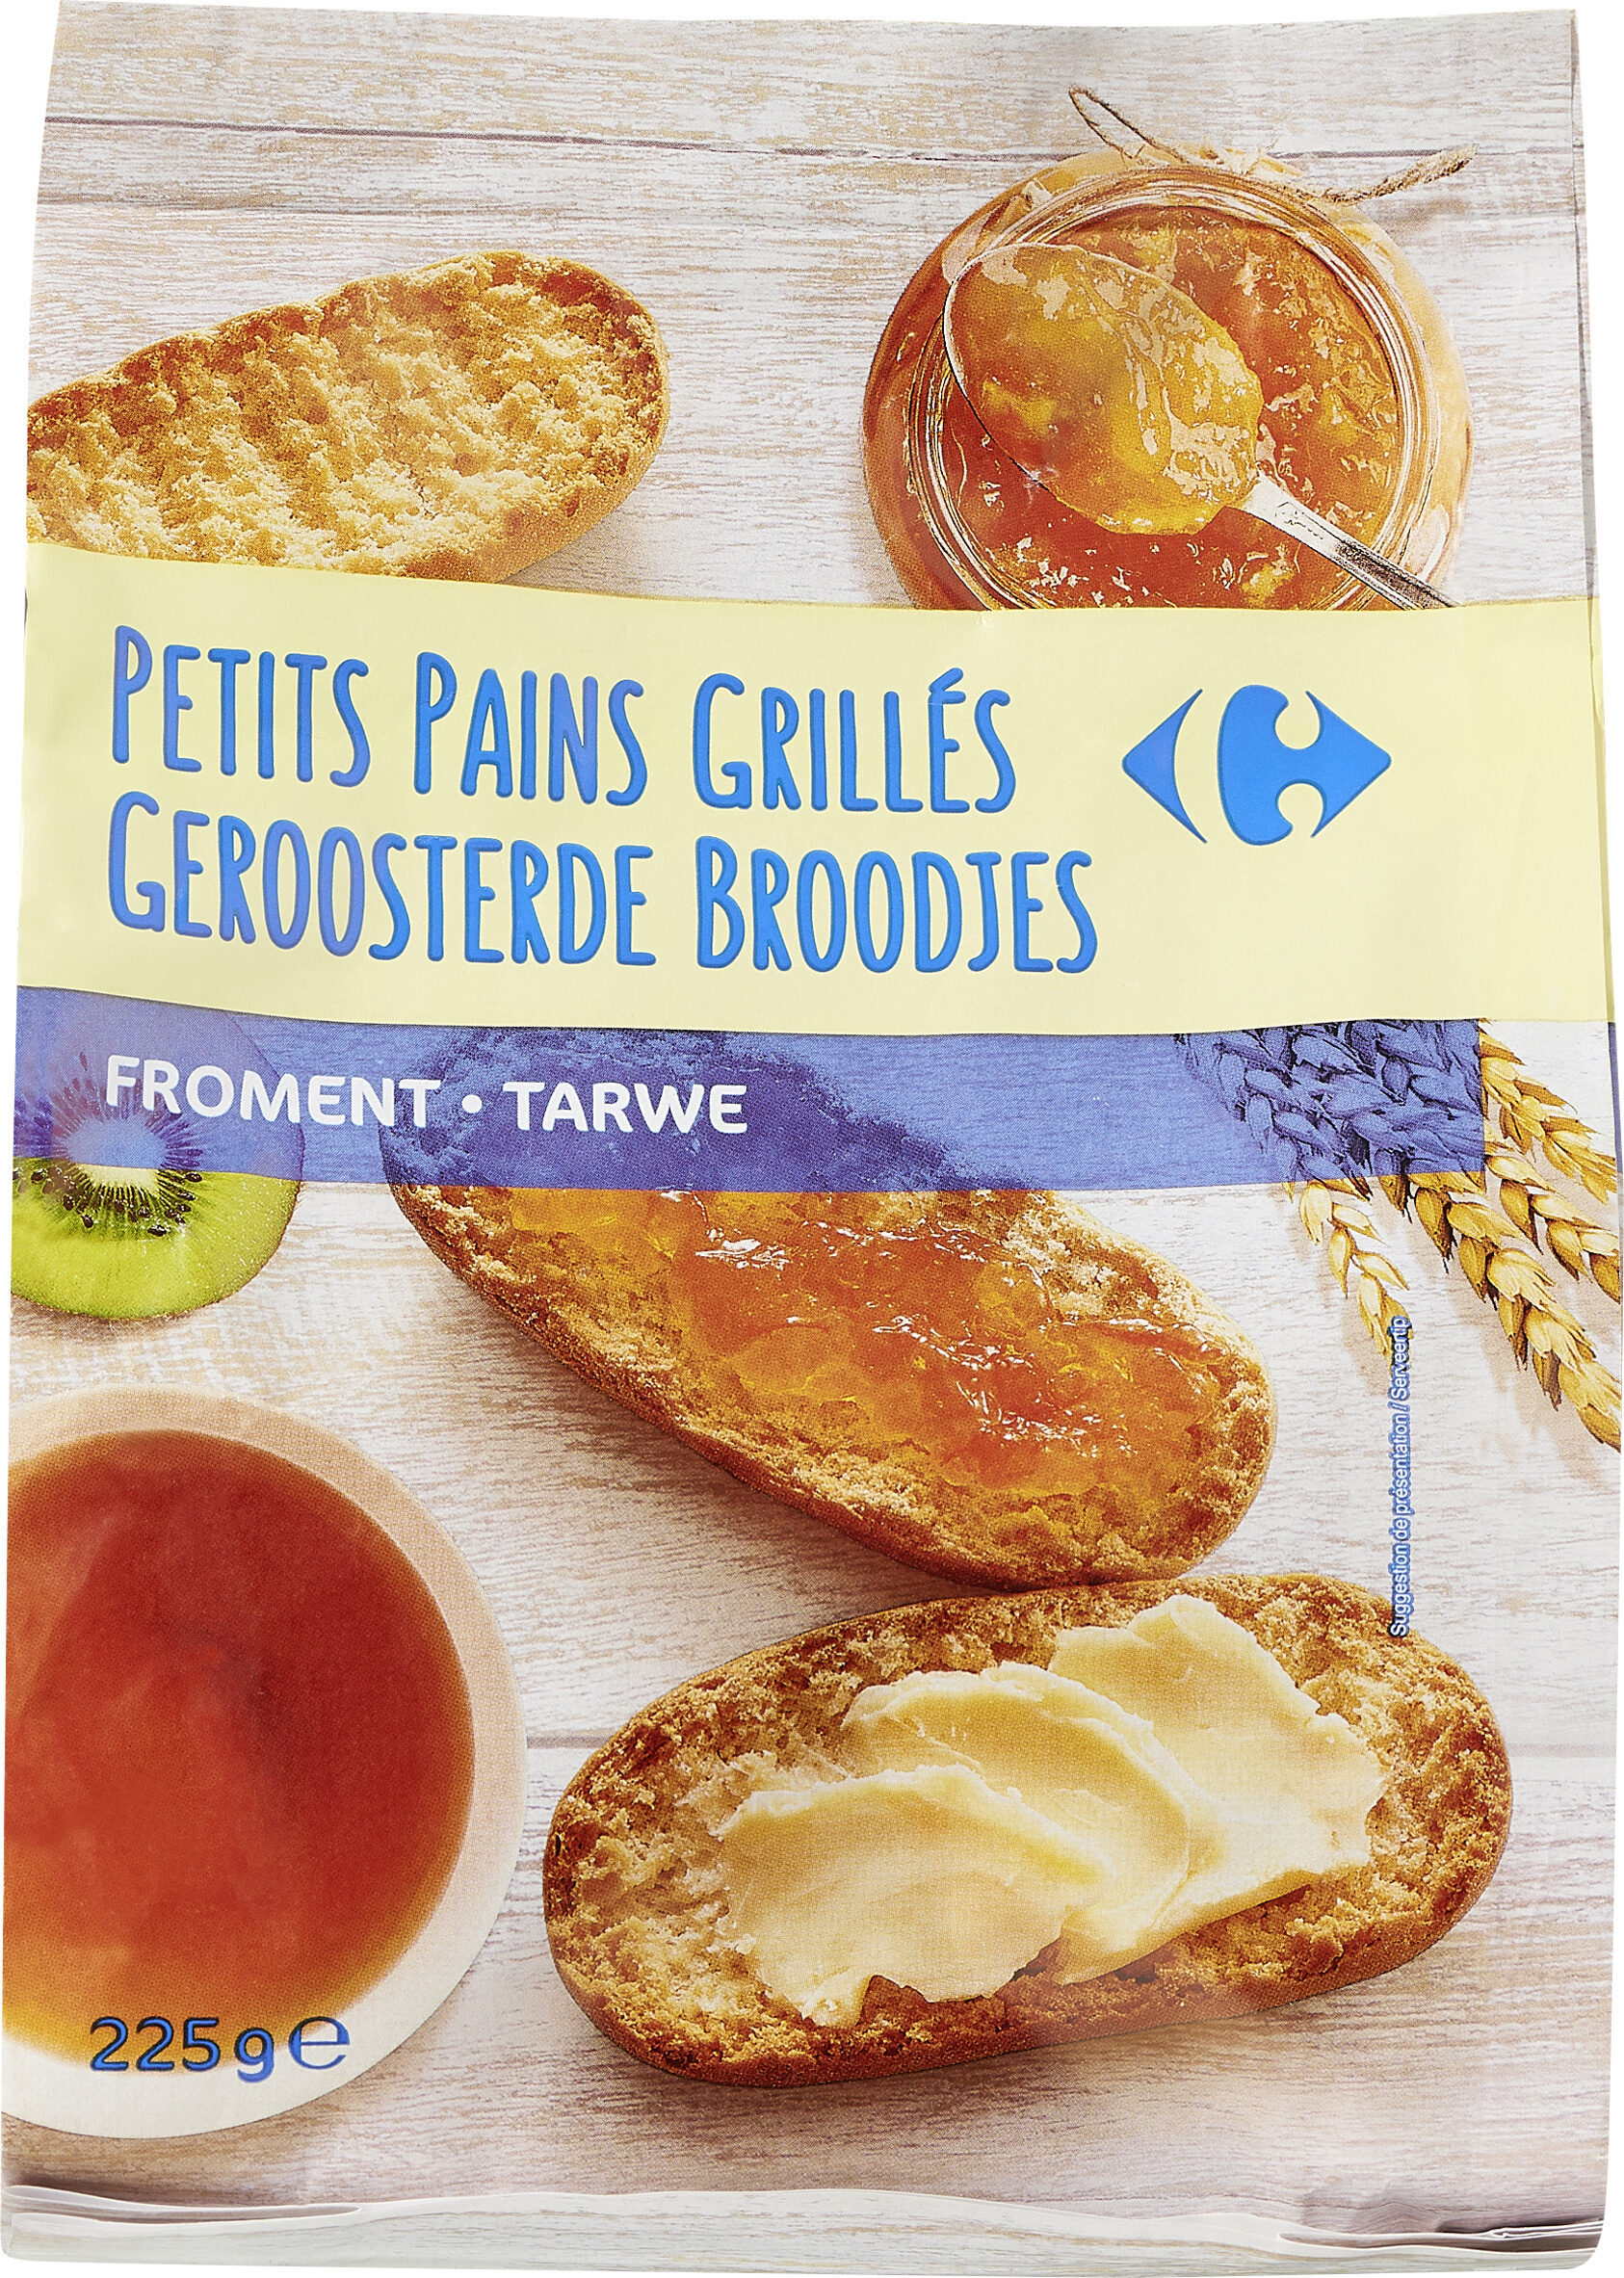 Petits pains grillés Nature - Produkt - fr